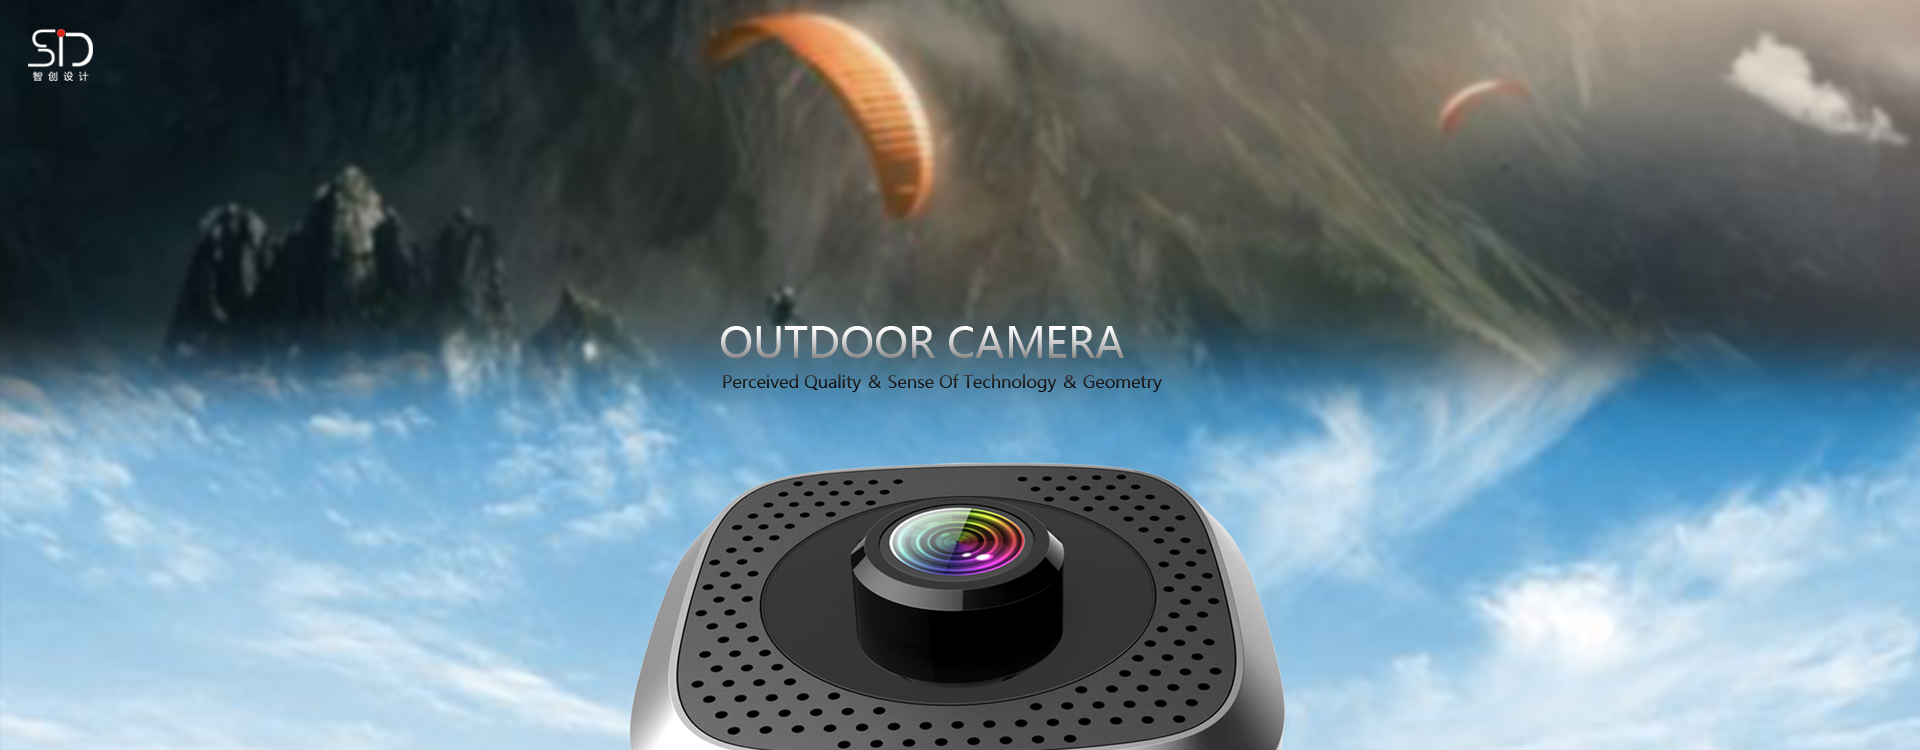 Outdoor Camera 工业设备设计